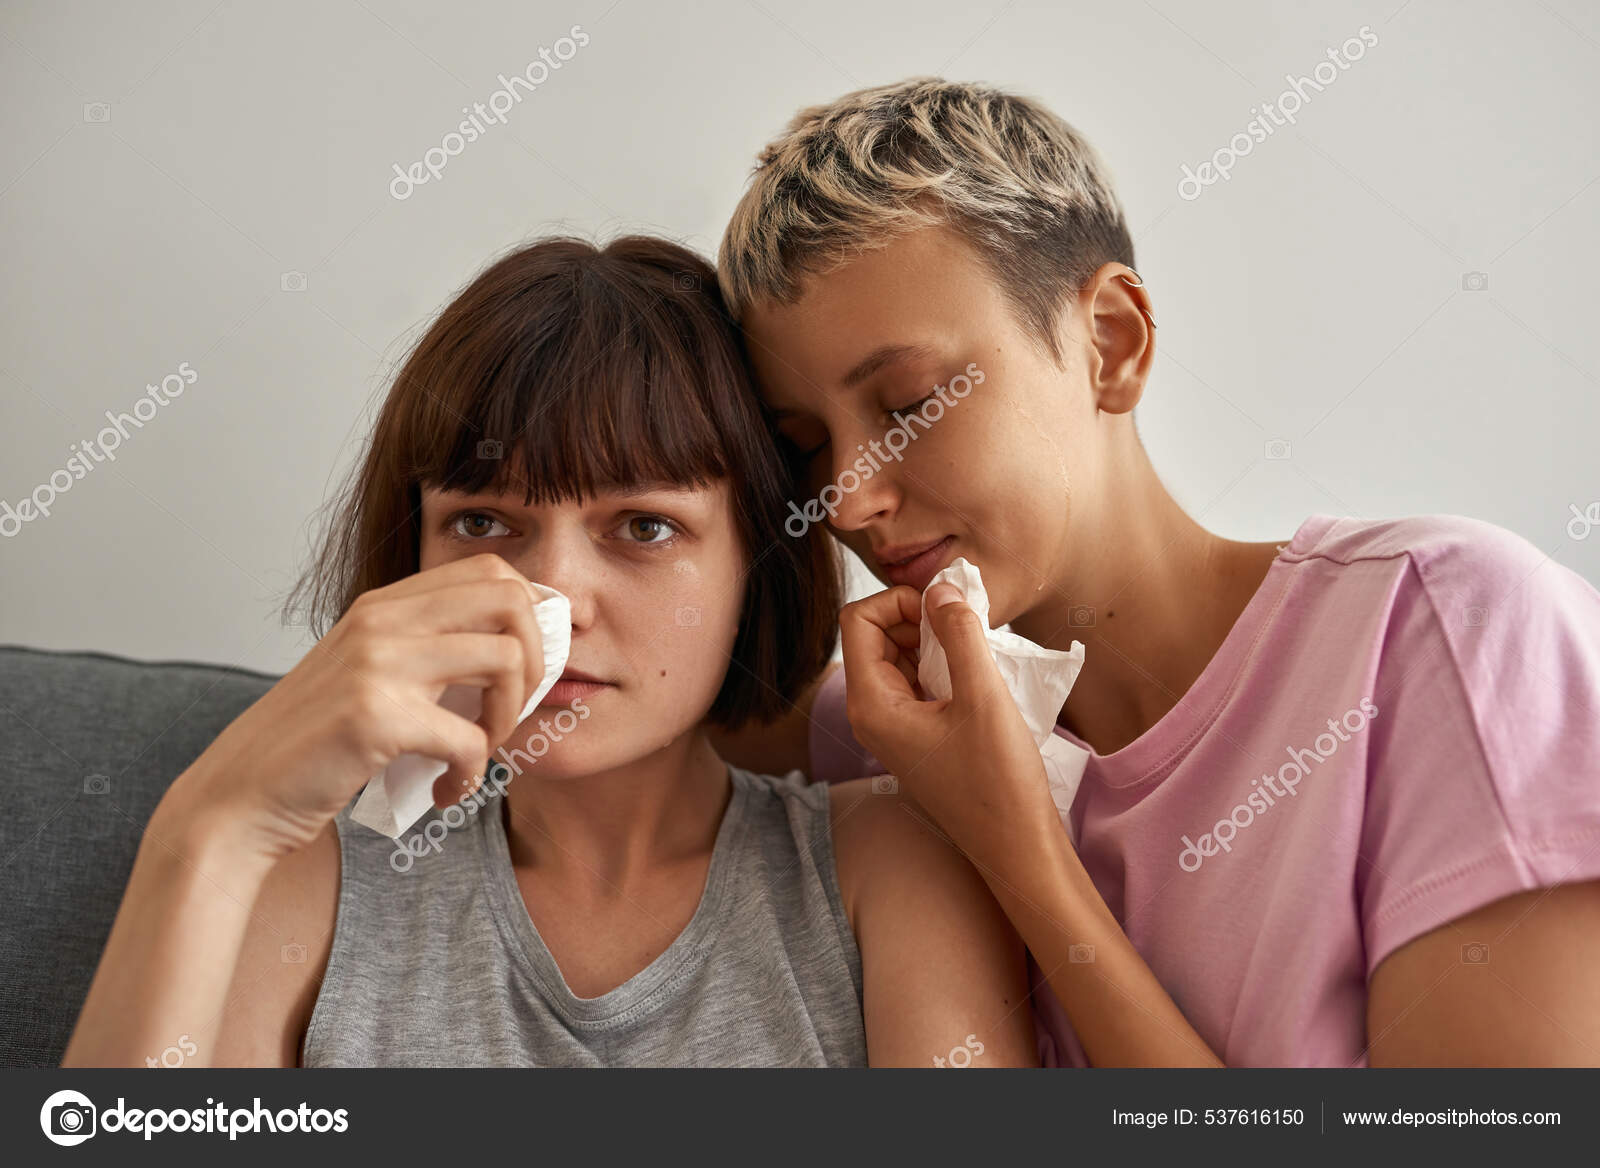 Юные грустные лесбиянки смотрят телевизор и плачут стоковое фото ©LanaStock 537616150